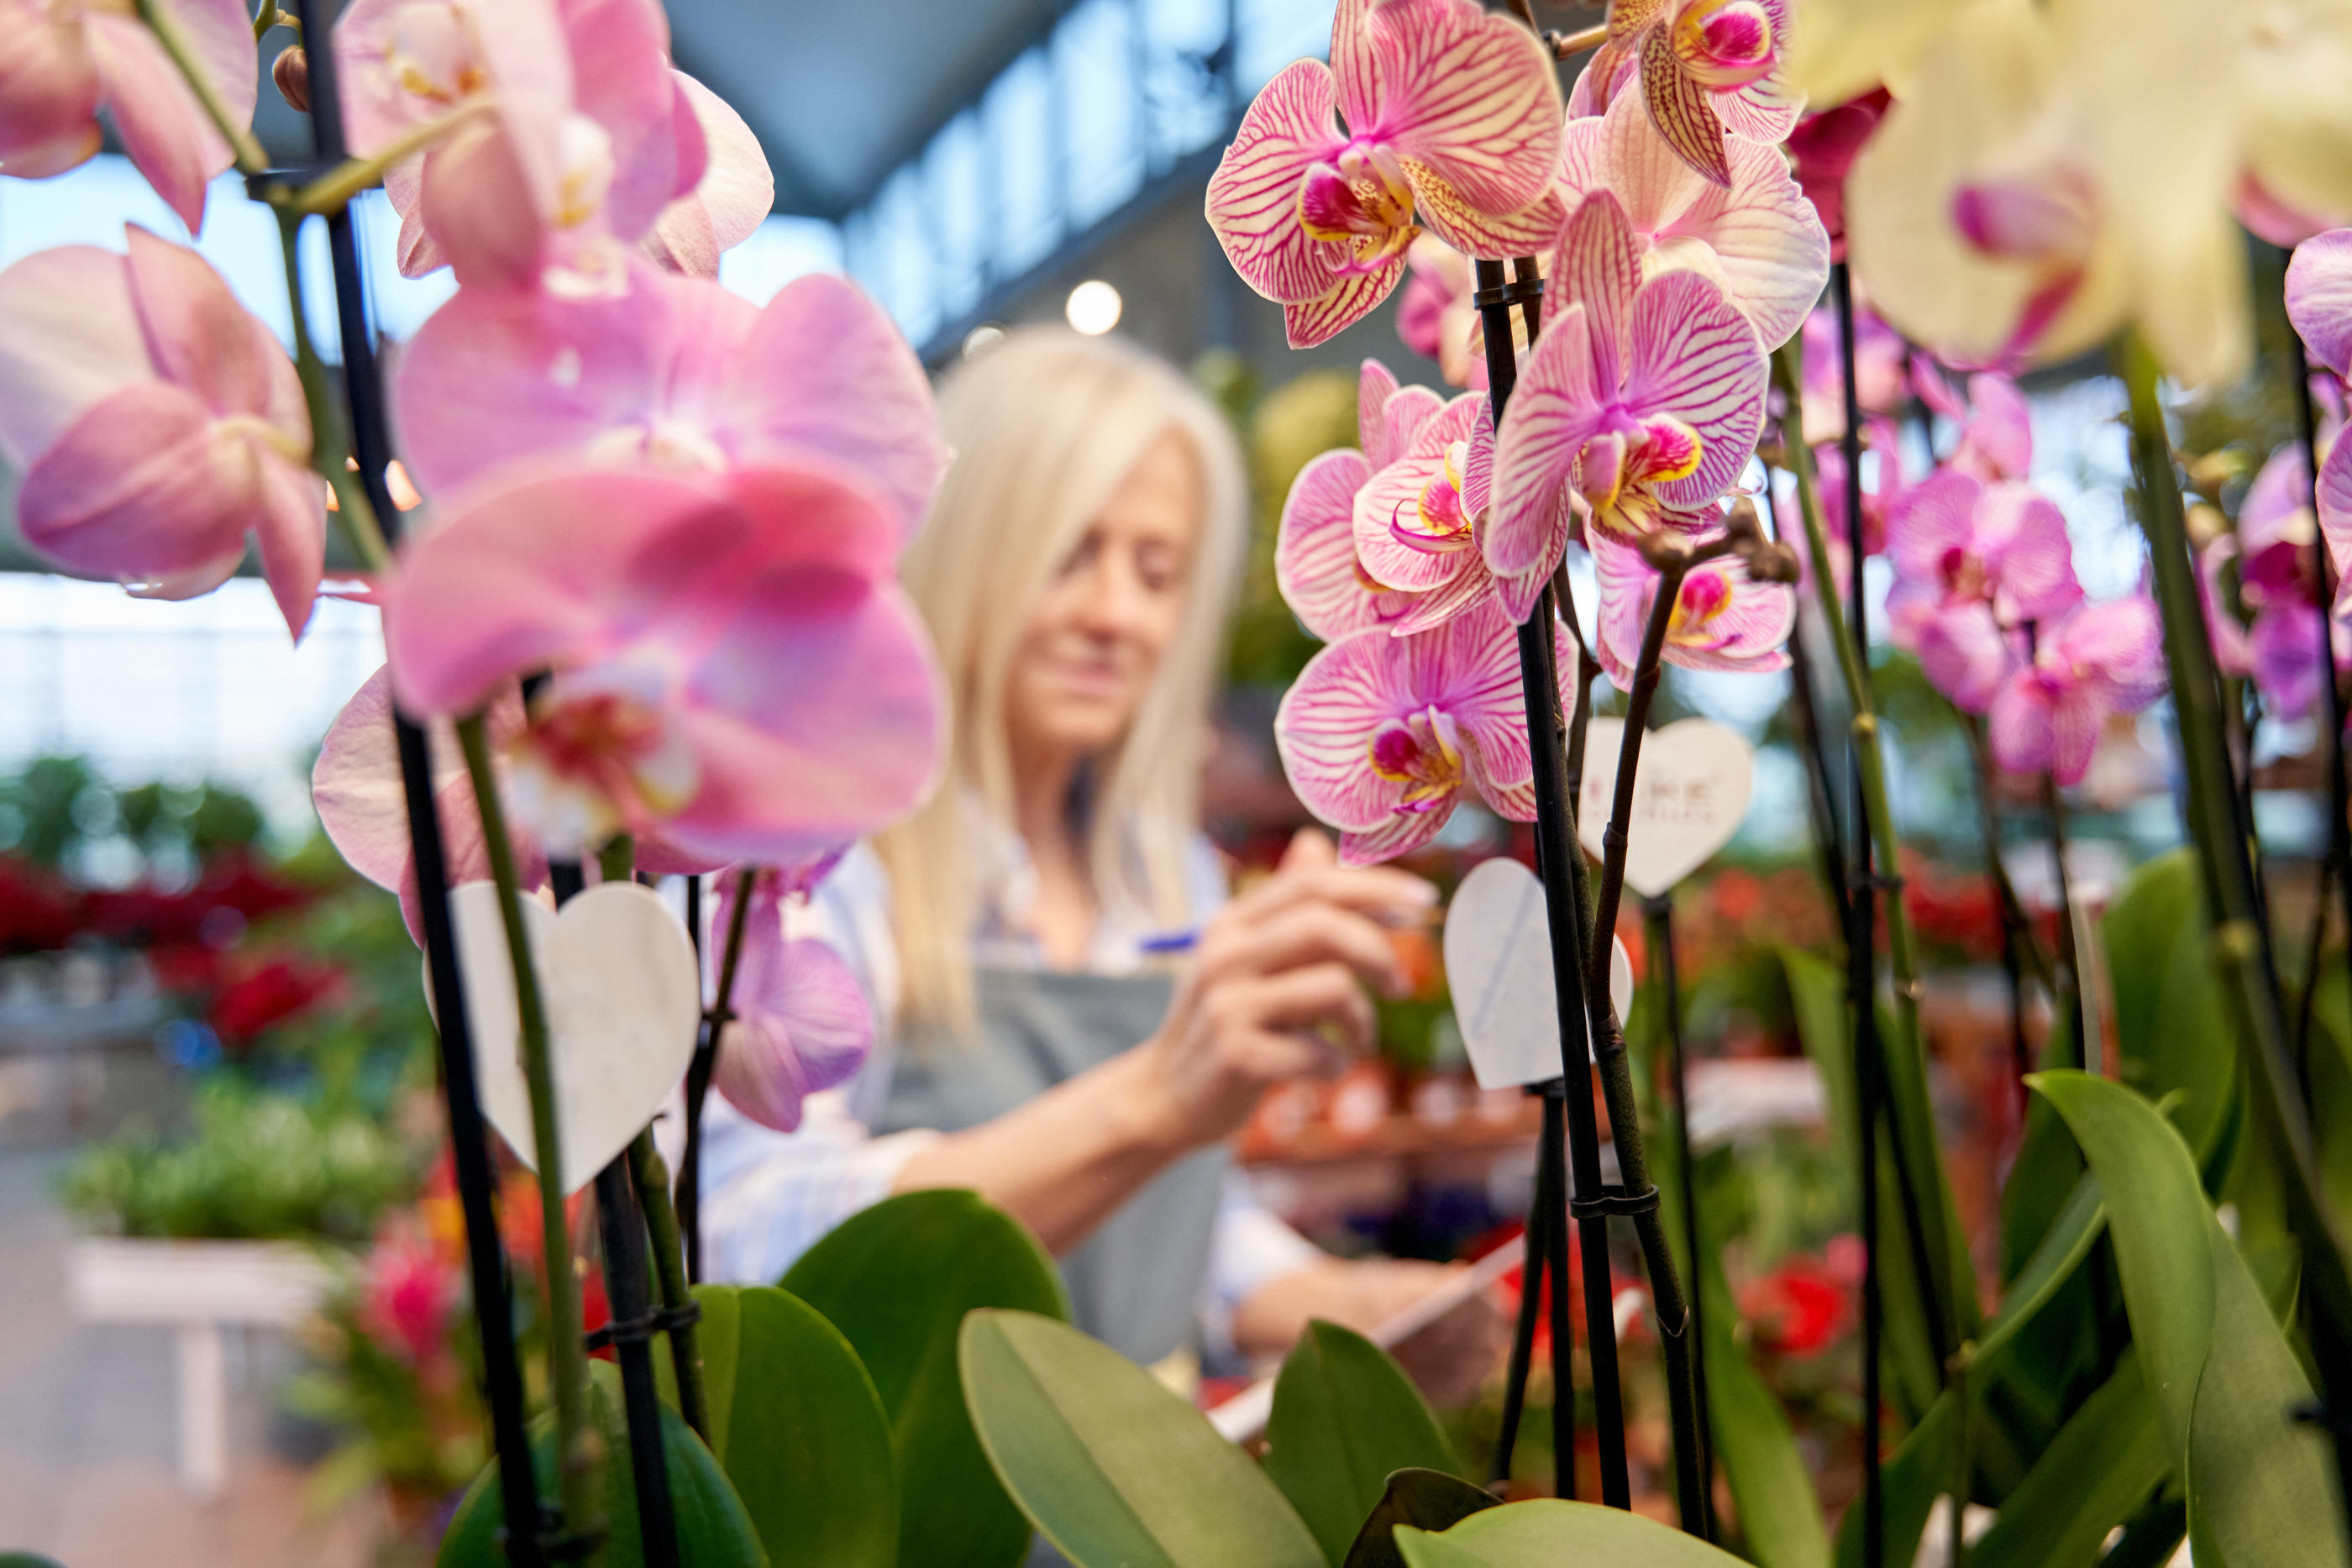 Les orchidées, qui pèsent un tiers du marché des plantes d’intérieur fleuries, sont majoritairement produites aux Pays-Bas, où les procédés de production sont très industrialisés. Istock/Oscar Martin